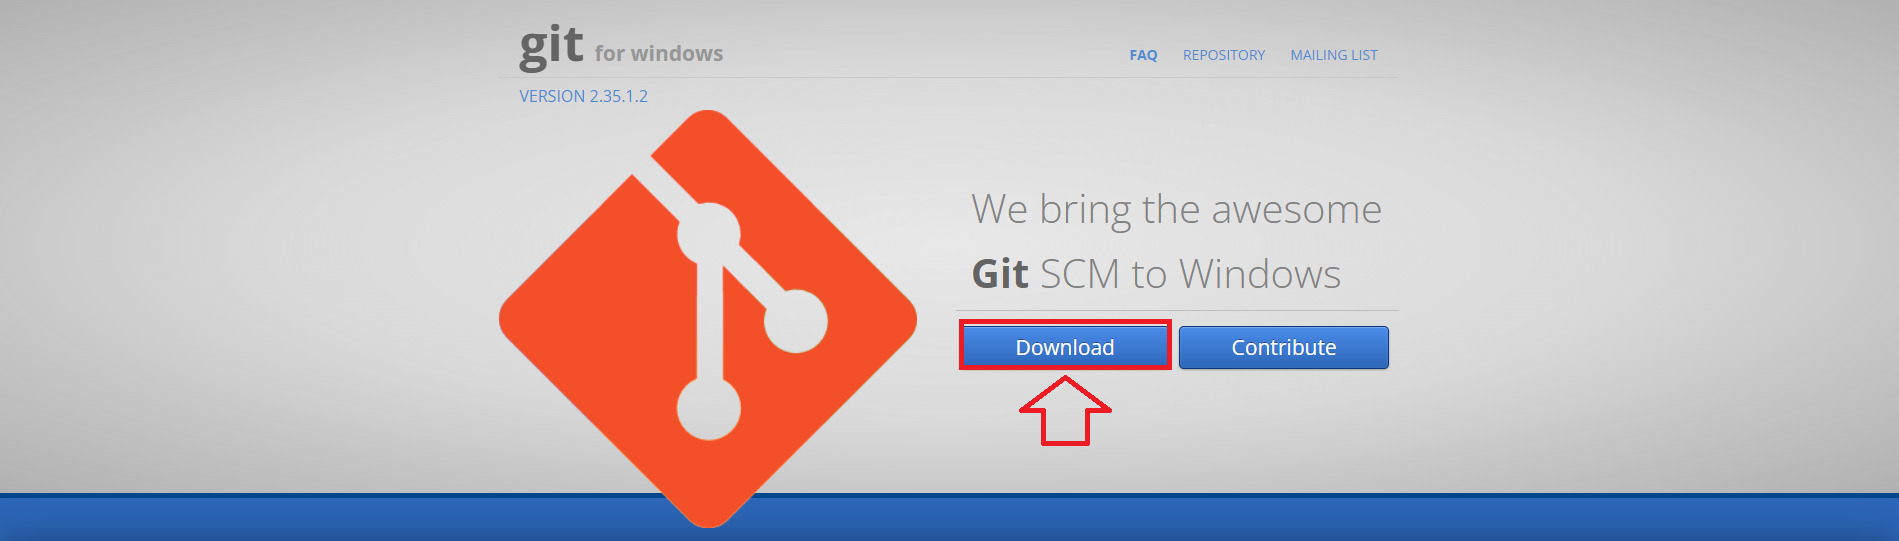 Git for Windows 公式サイト